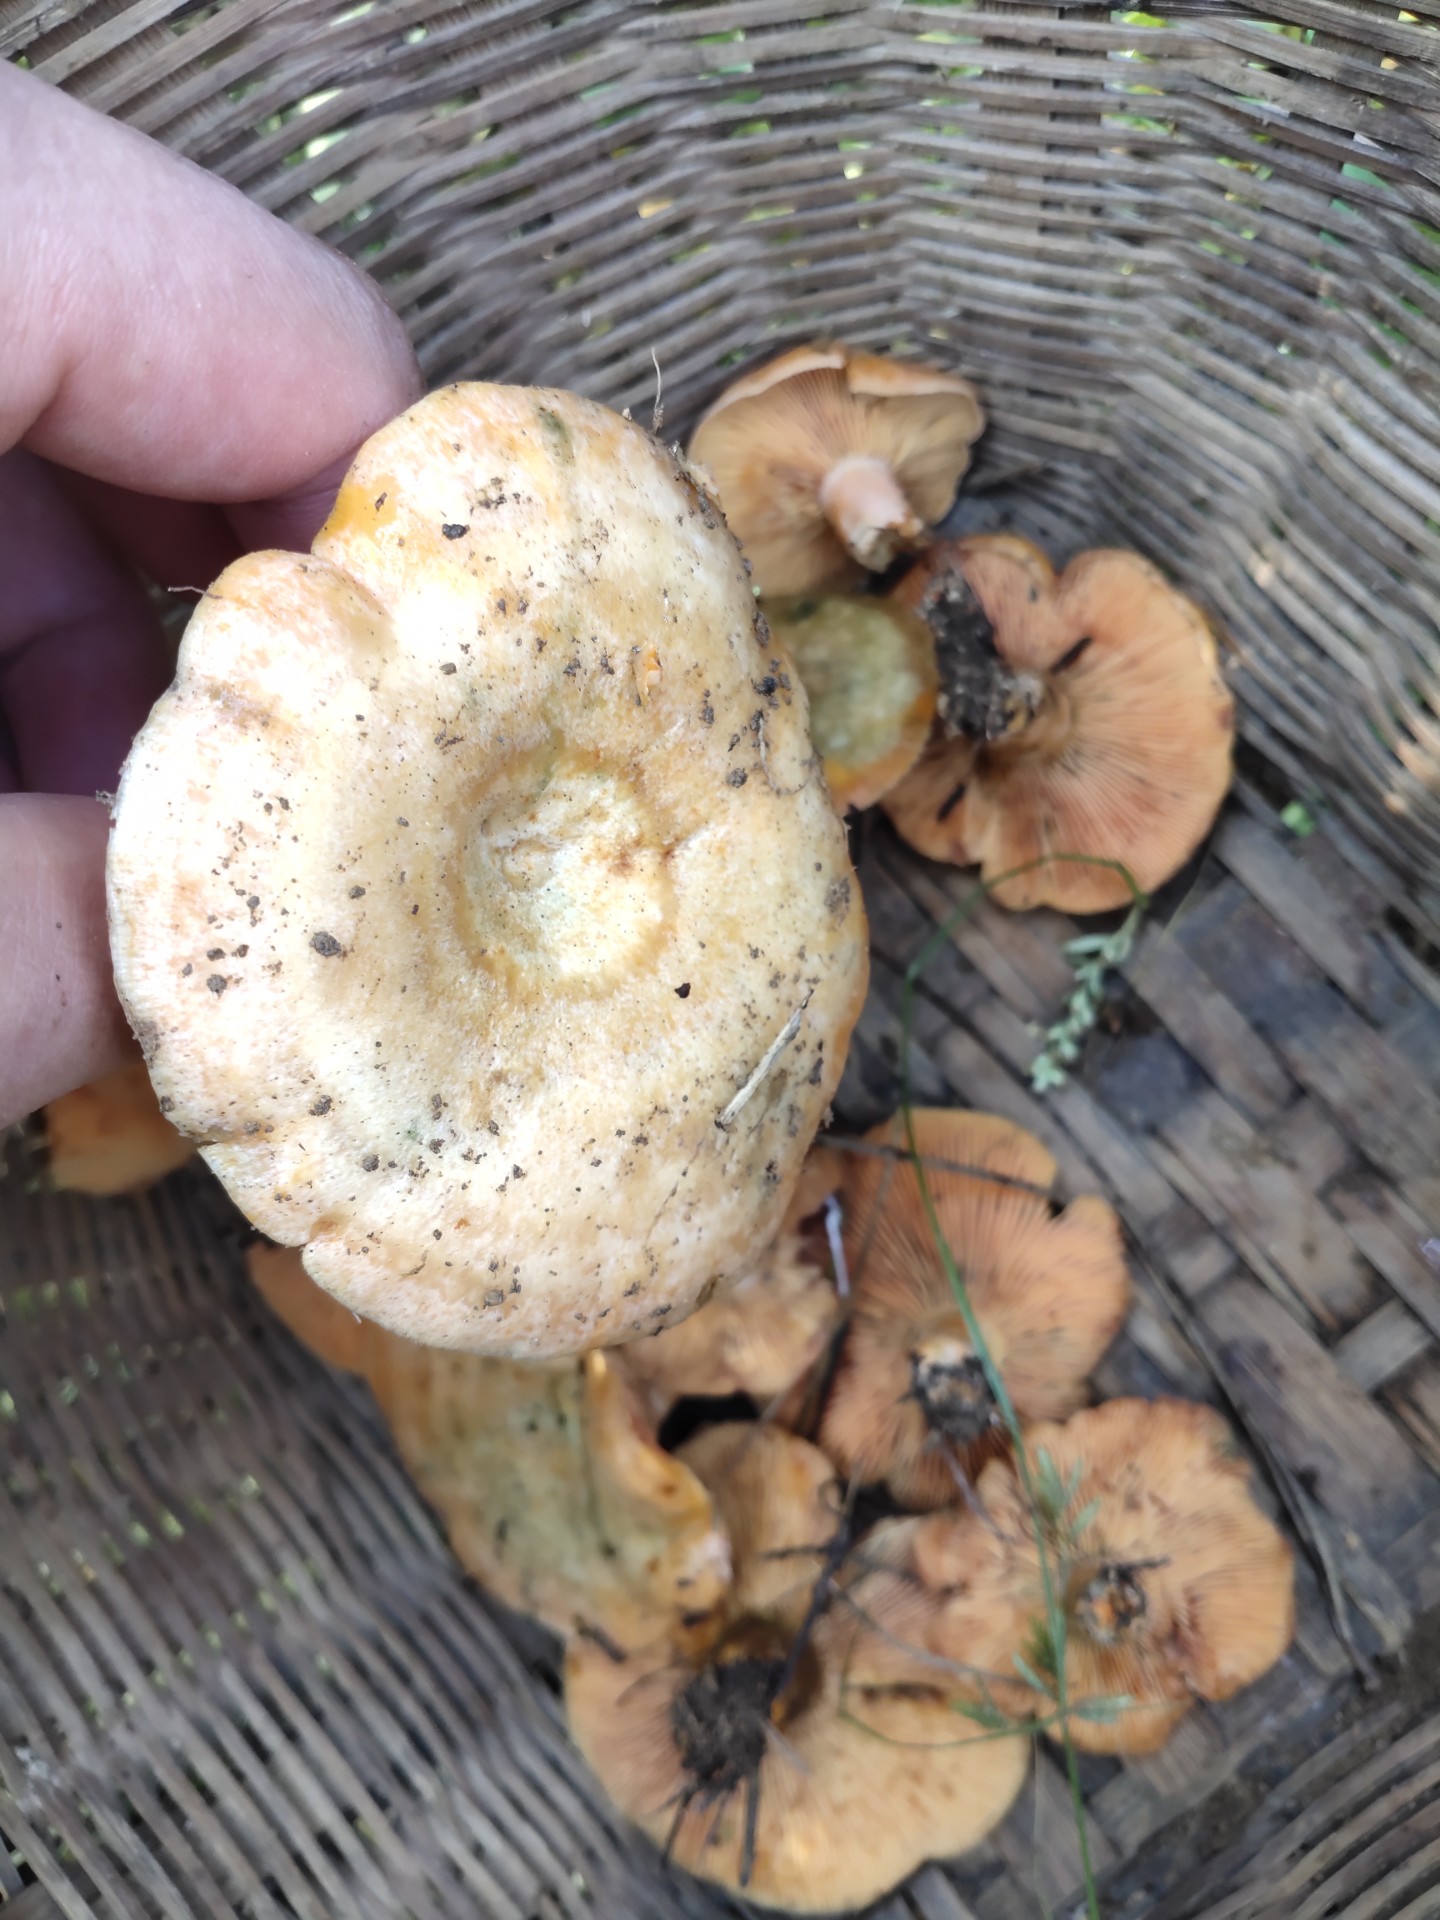 松树底下的蘑菇图片图片